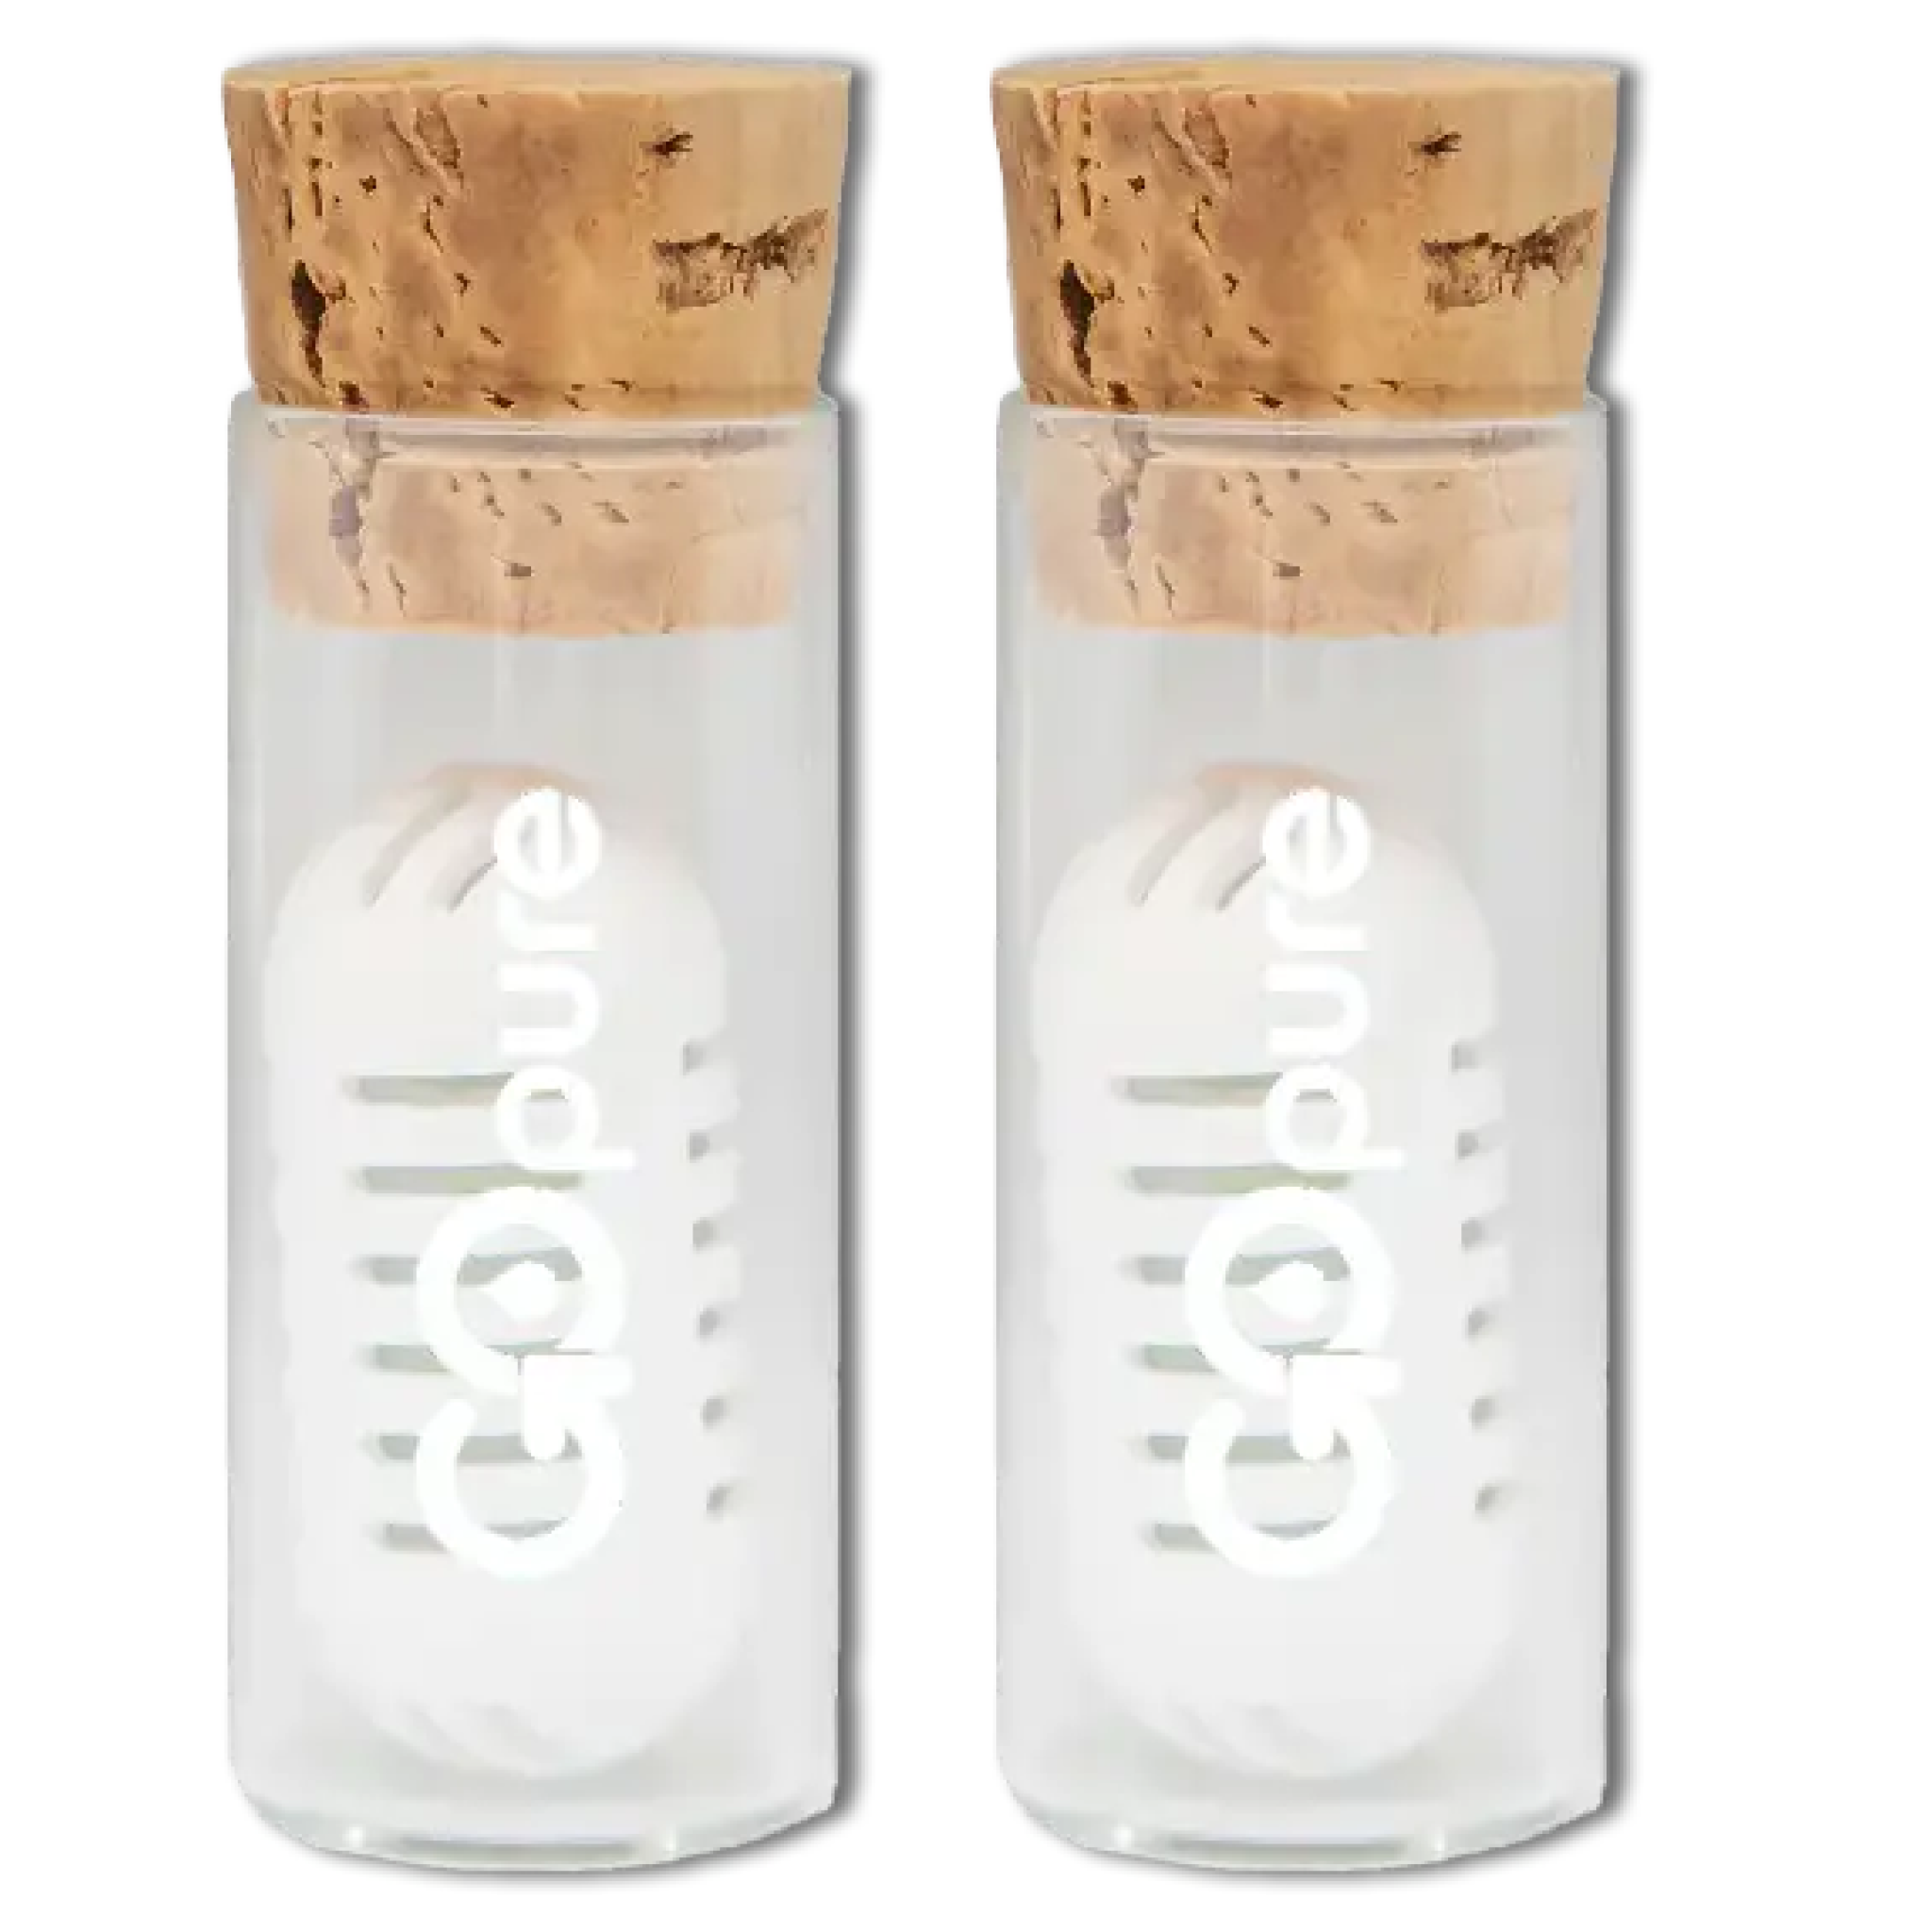 Fragrance Pod Storage for Air up Bottle Including Magnetic Holder